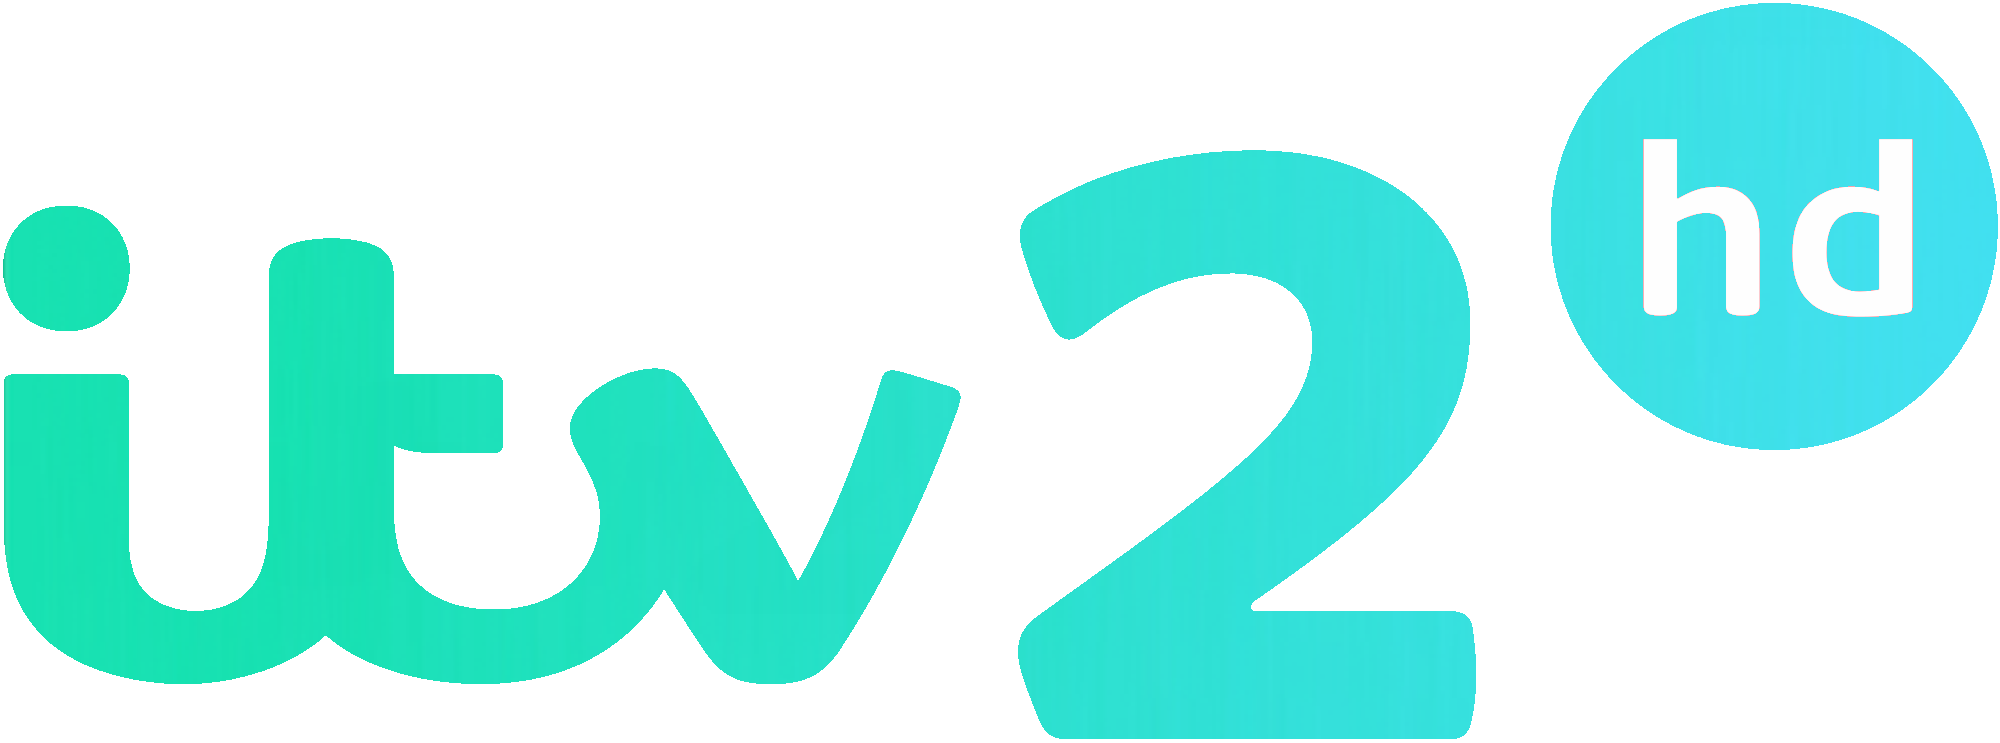 ITV 6 logo vector download